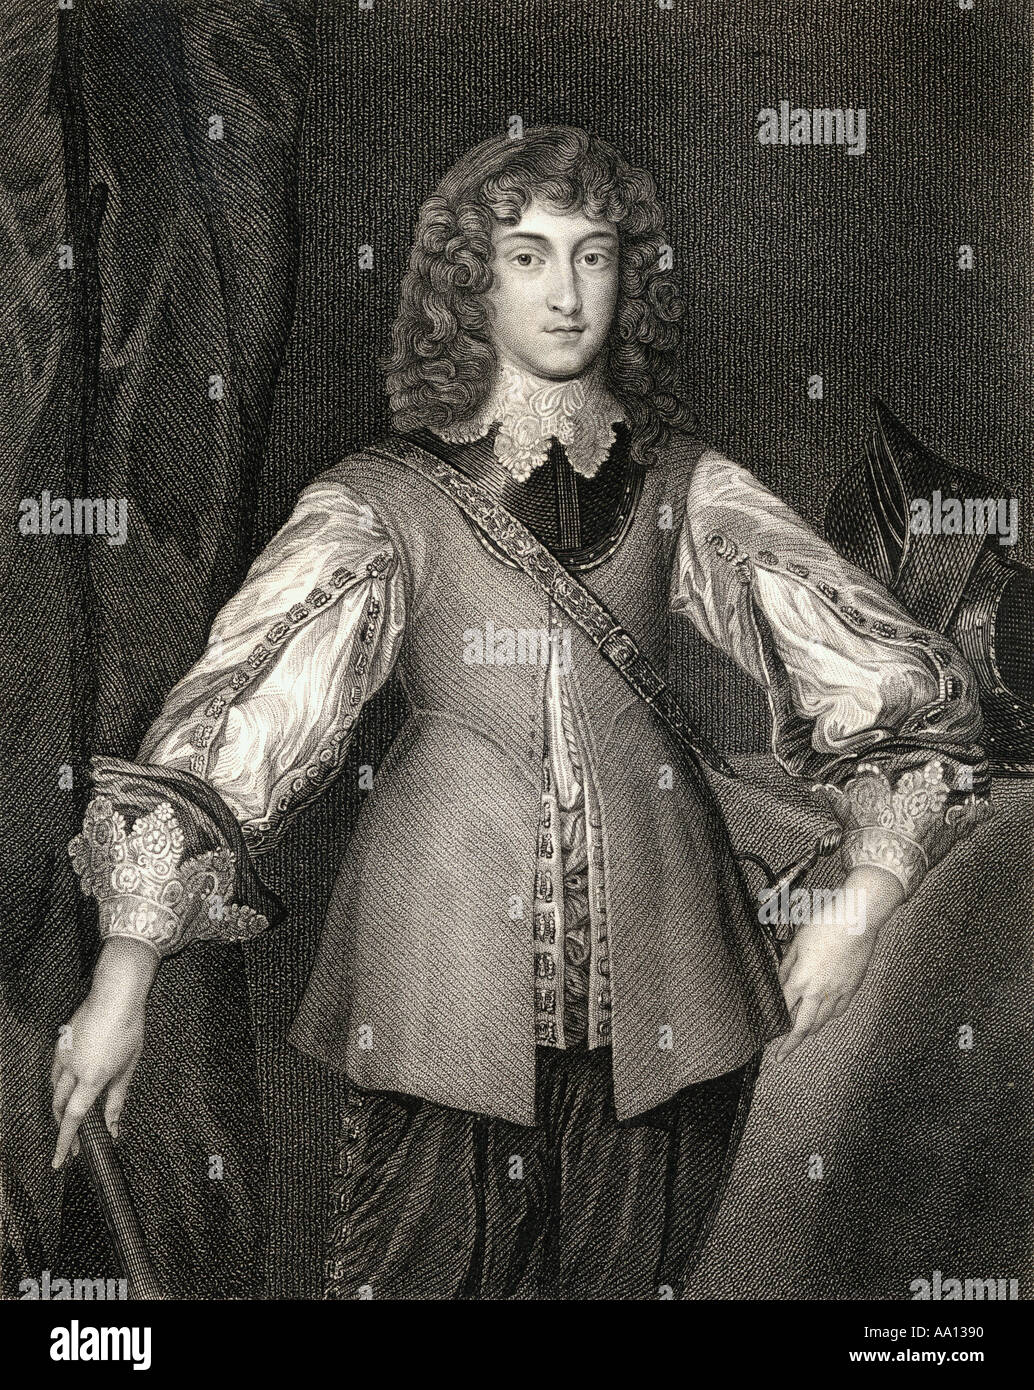 Prince Rupert von Rhein, Herzog von Cumberland, 1619 - 1682. Deutscher Soldat, Admiral, Wissenschaftler, Sportler, kolonialer Gouverneur und laienhaften Artist Stockfoto